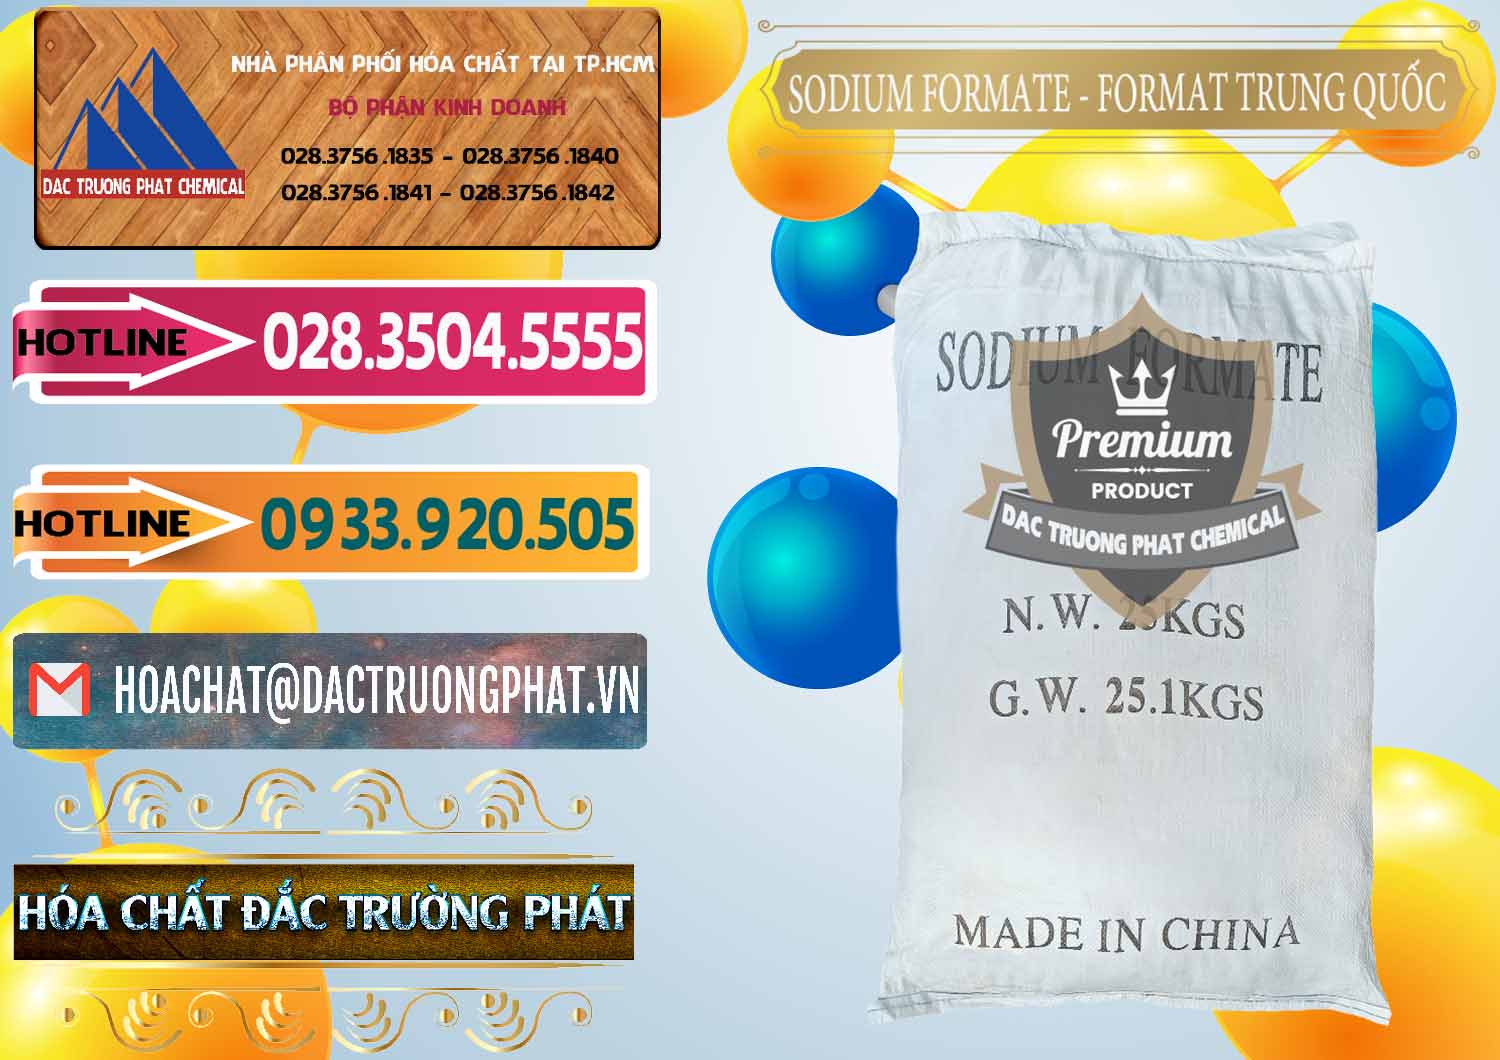 Đơn vị chuyên kinh doanh và bán Sodium Formate - Natri Format Trung Quốc China - 0142 - Công ty chuyên cung ứng - phân phối hóa chất tại TP.HCM - dactruongphat.vn